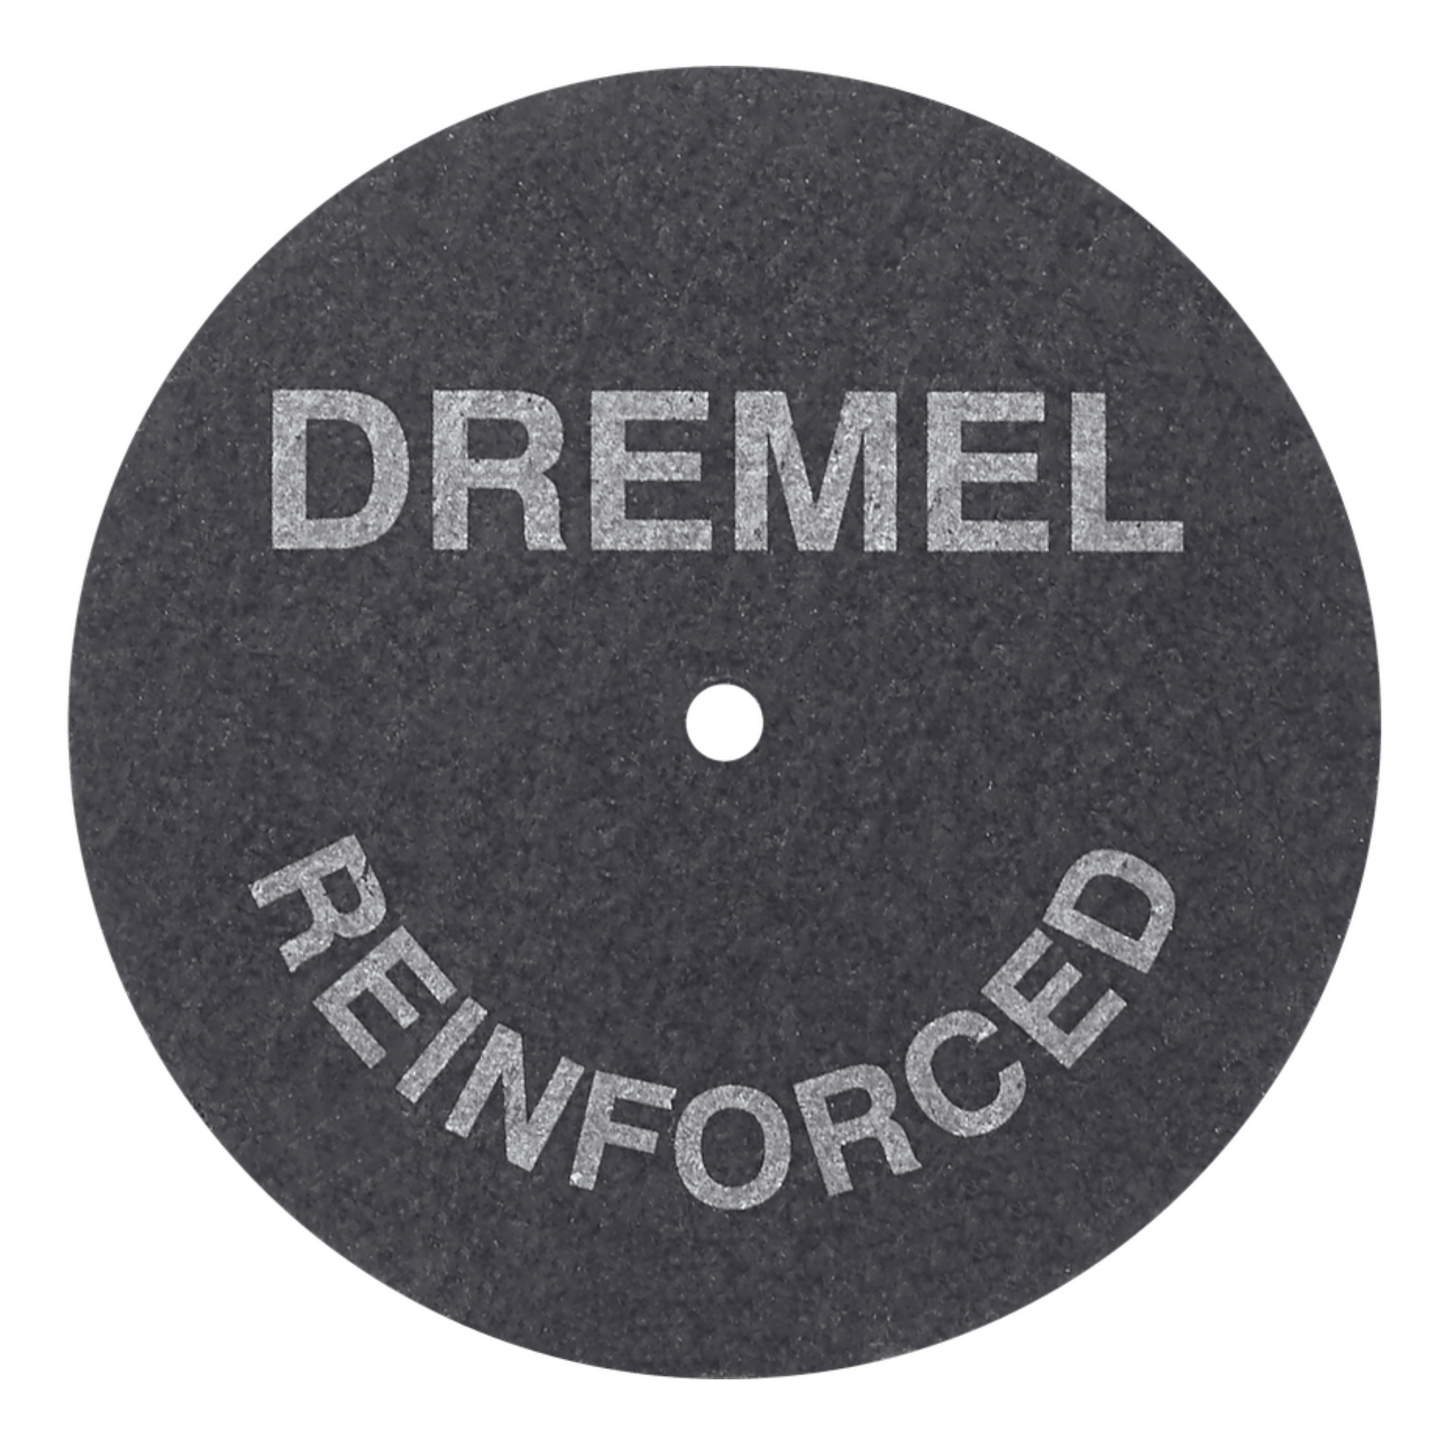 Dremel 426 - 1 paquet (5 x pièces) meules à tronçonner renforcées en fibre de verre de 1-1/4 pouce de diamètre - 426